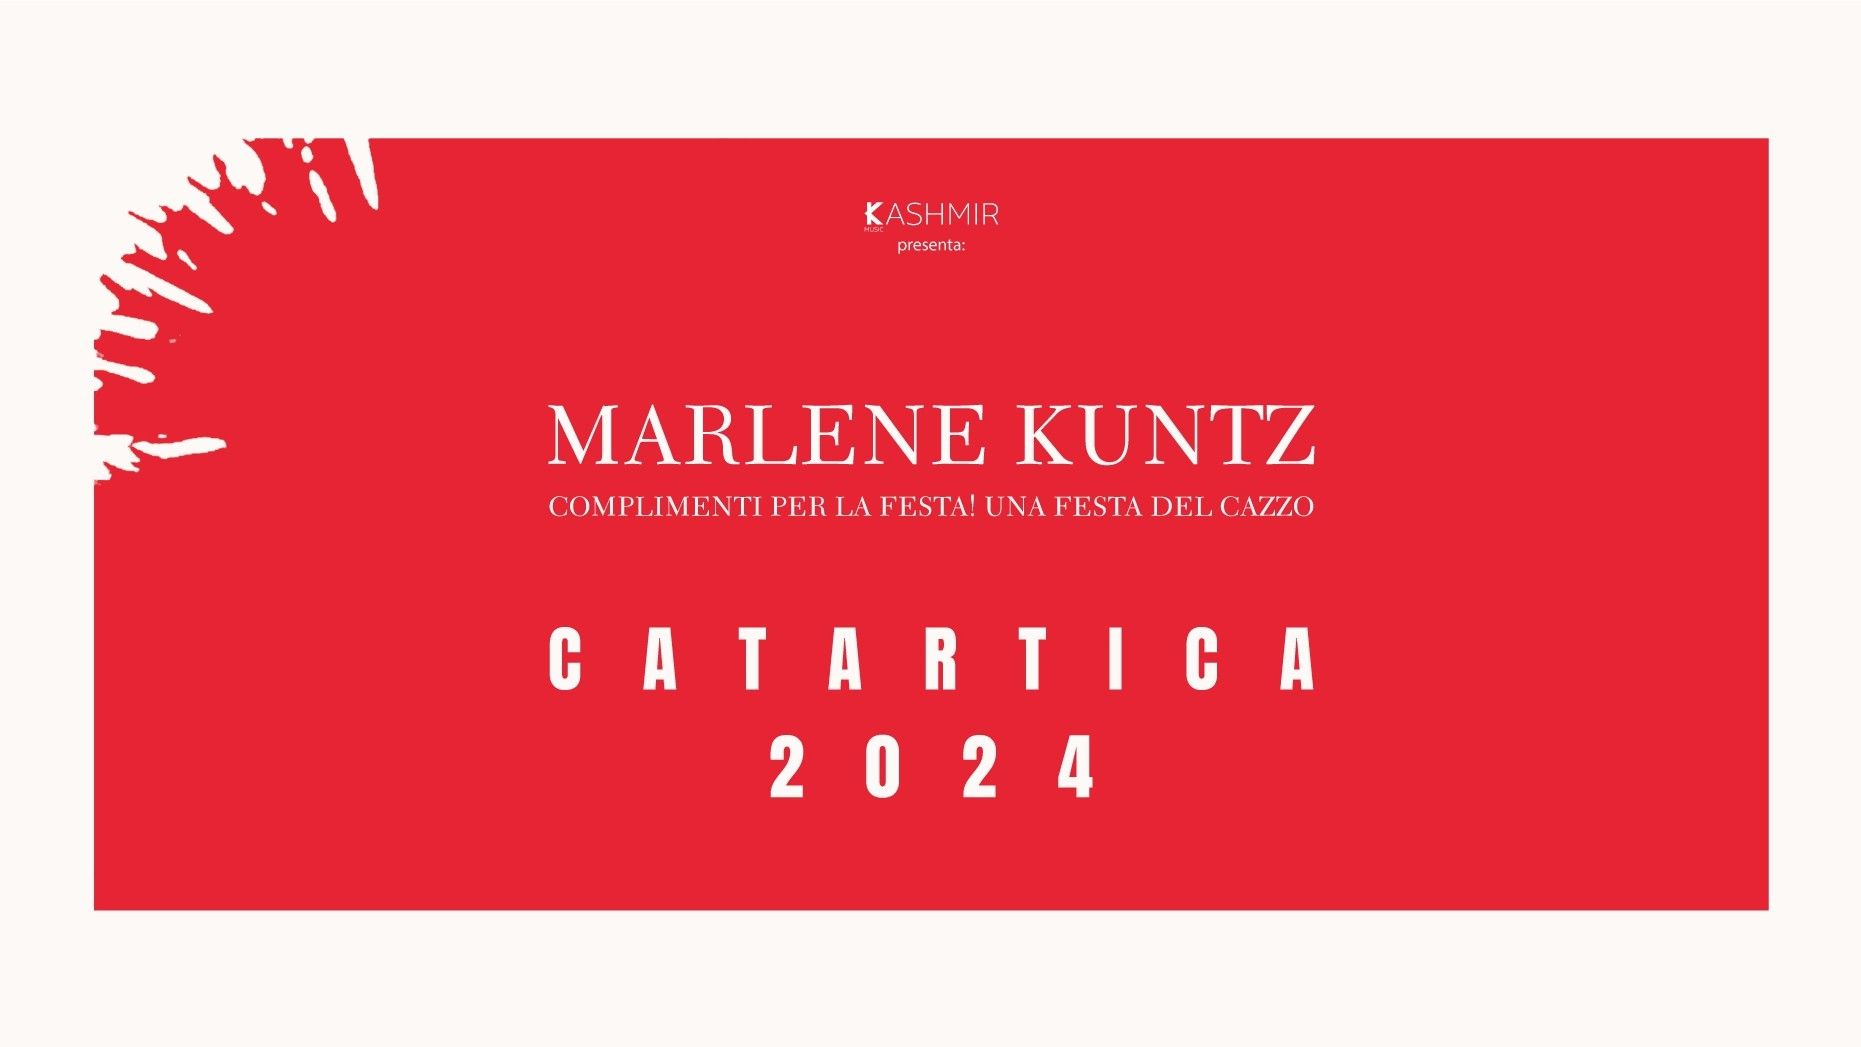 Marlene Kuntz - Catartica Tour 2024